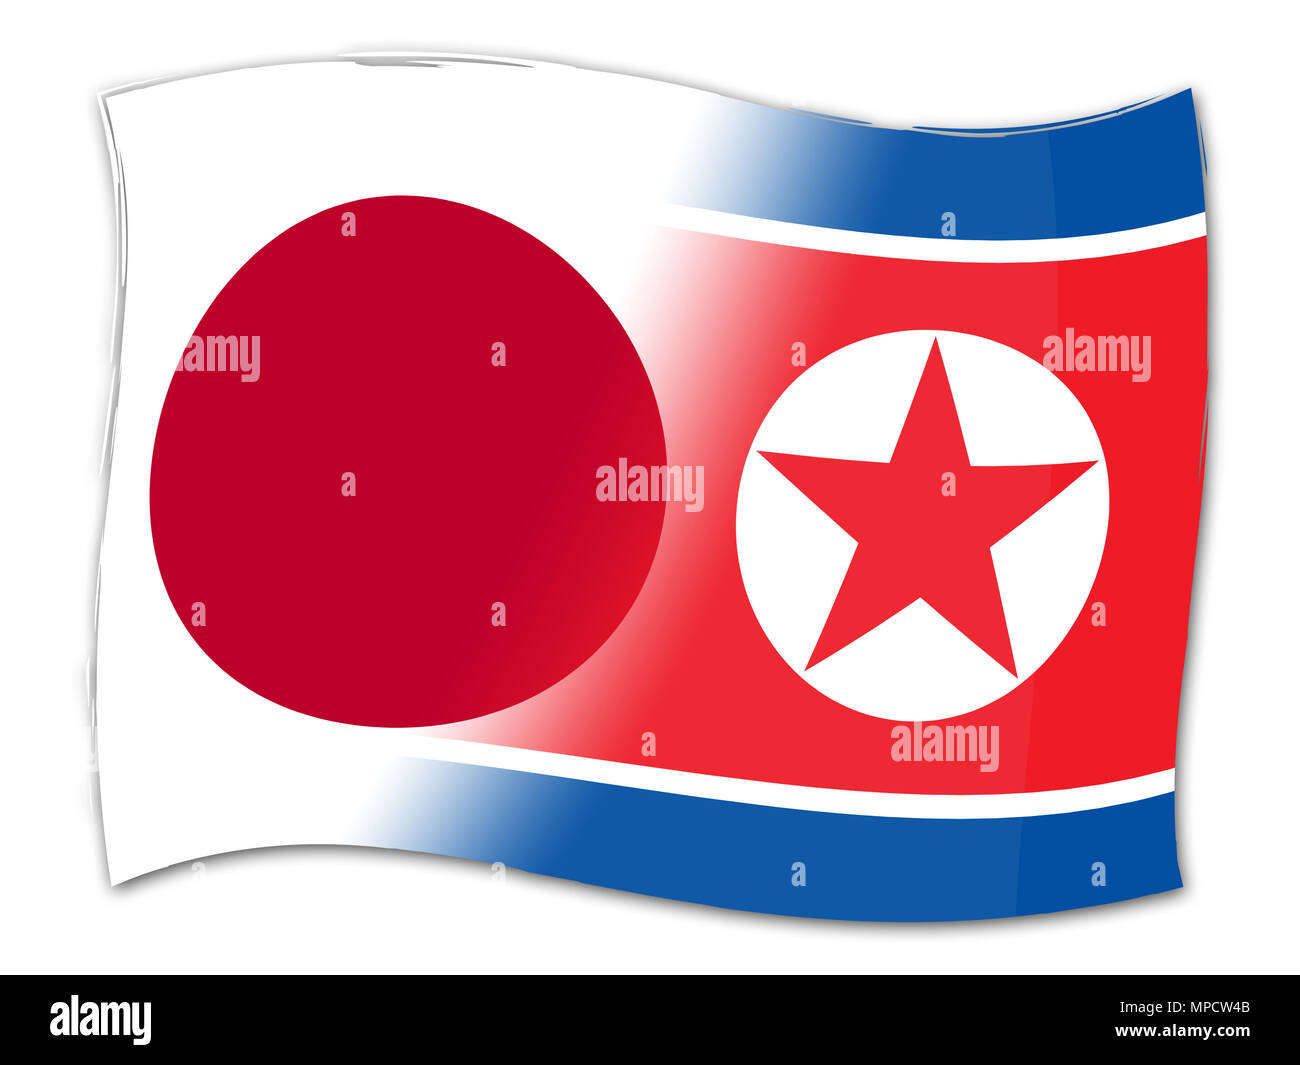 Tokio gegenüber Nordkorea Nordkorea Atomgesprächen 3 Abbildung d. Liebe Einheit und der Denuklearisierung Konfrontation zwischen Ländern - Japan und Kim Jong Un Stockfoto